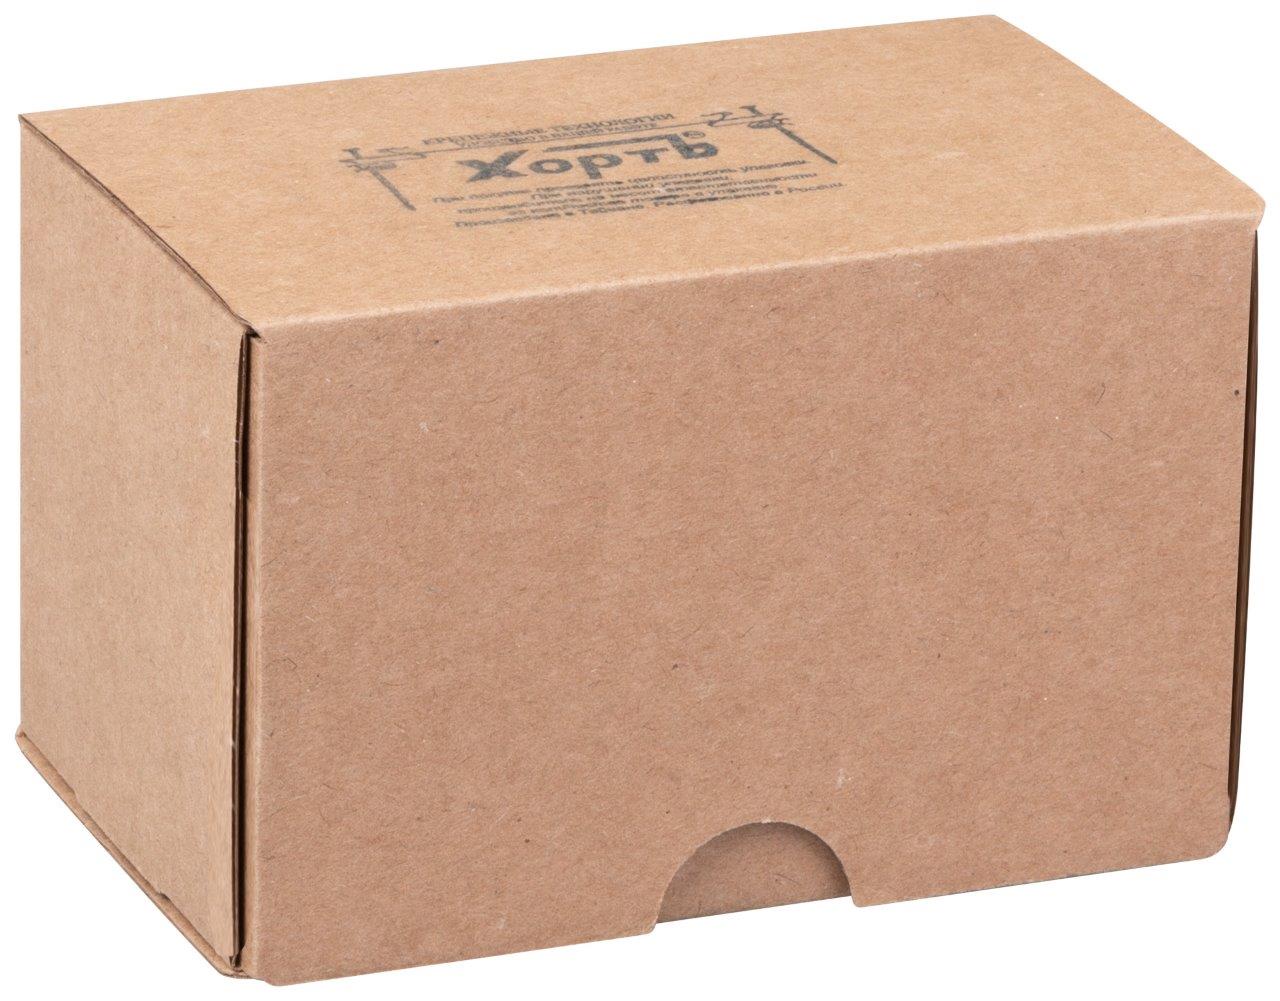 КАТЕГОРИЯ "4""средняя" фасовка в картонные коробки по 250 шт. (или 0,25 кг)